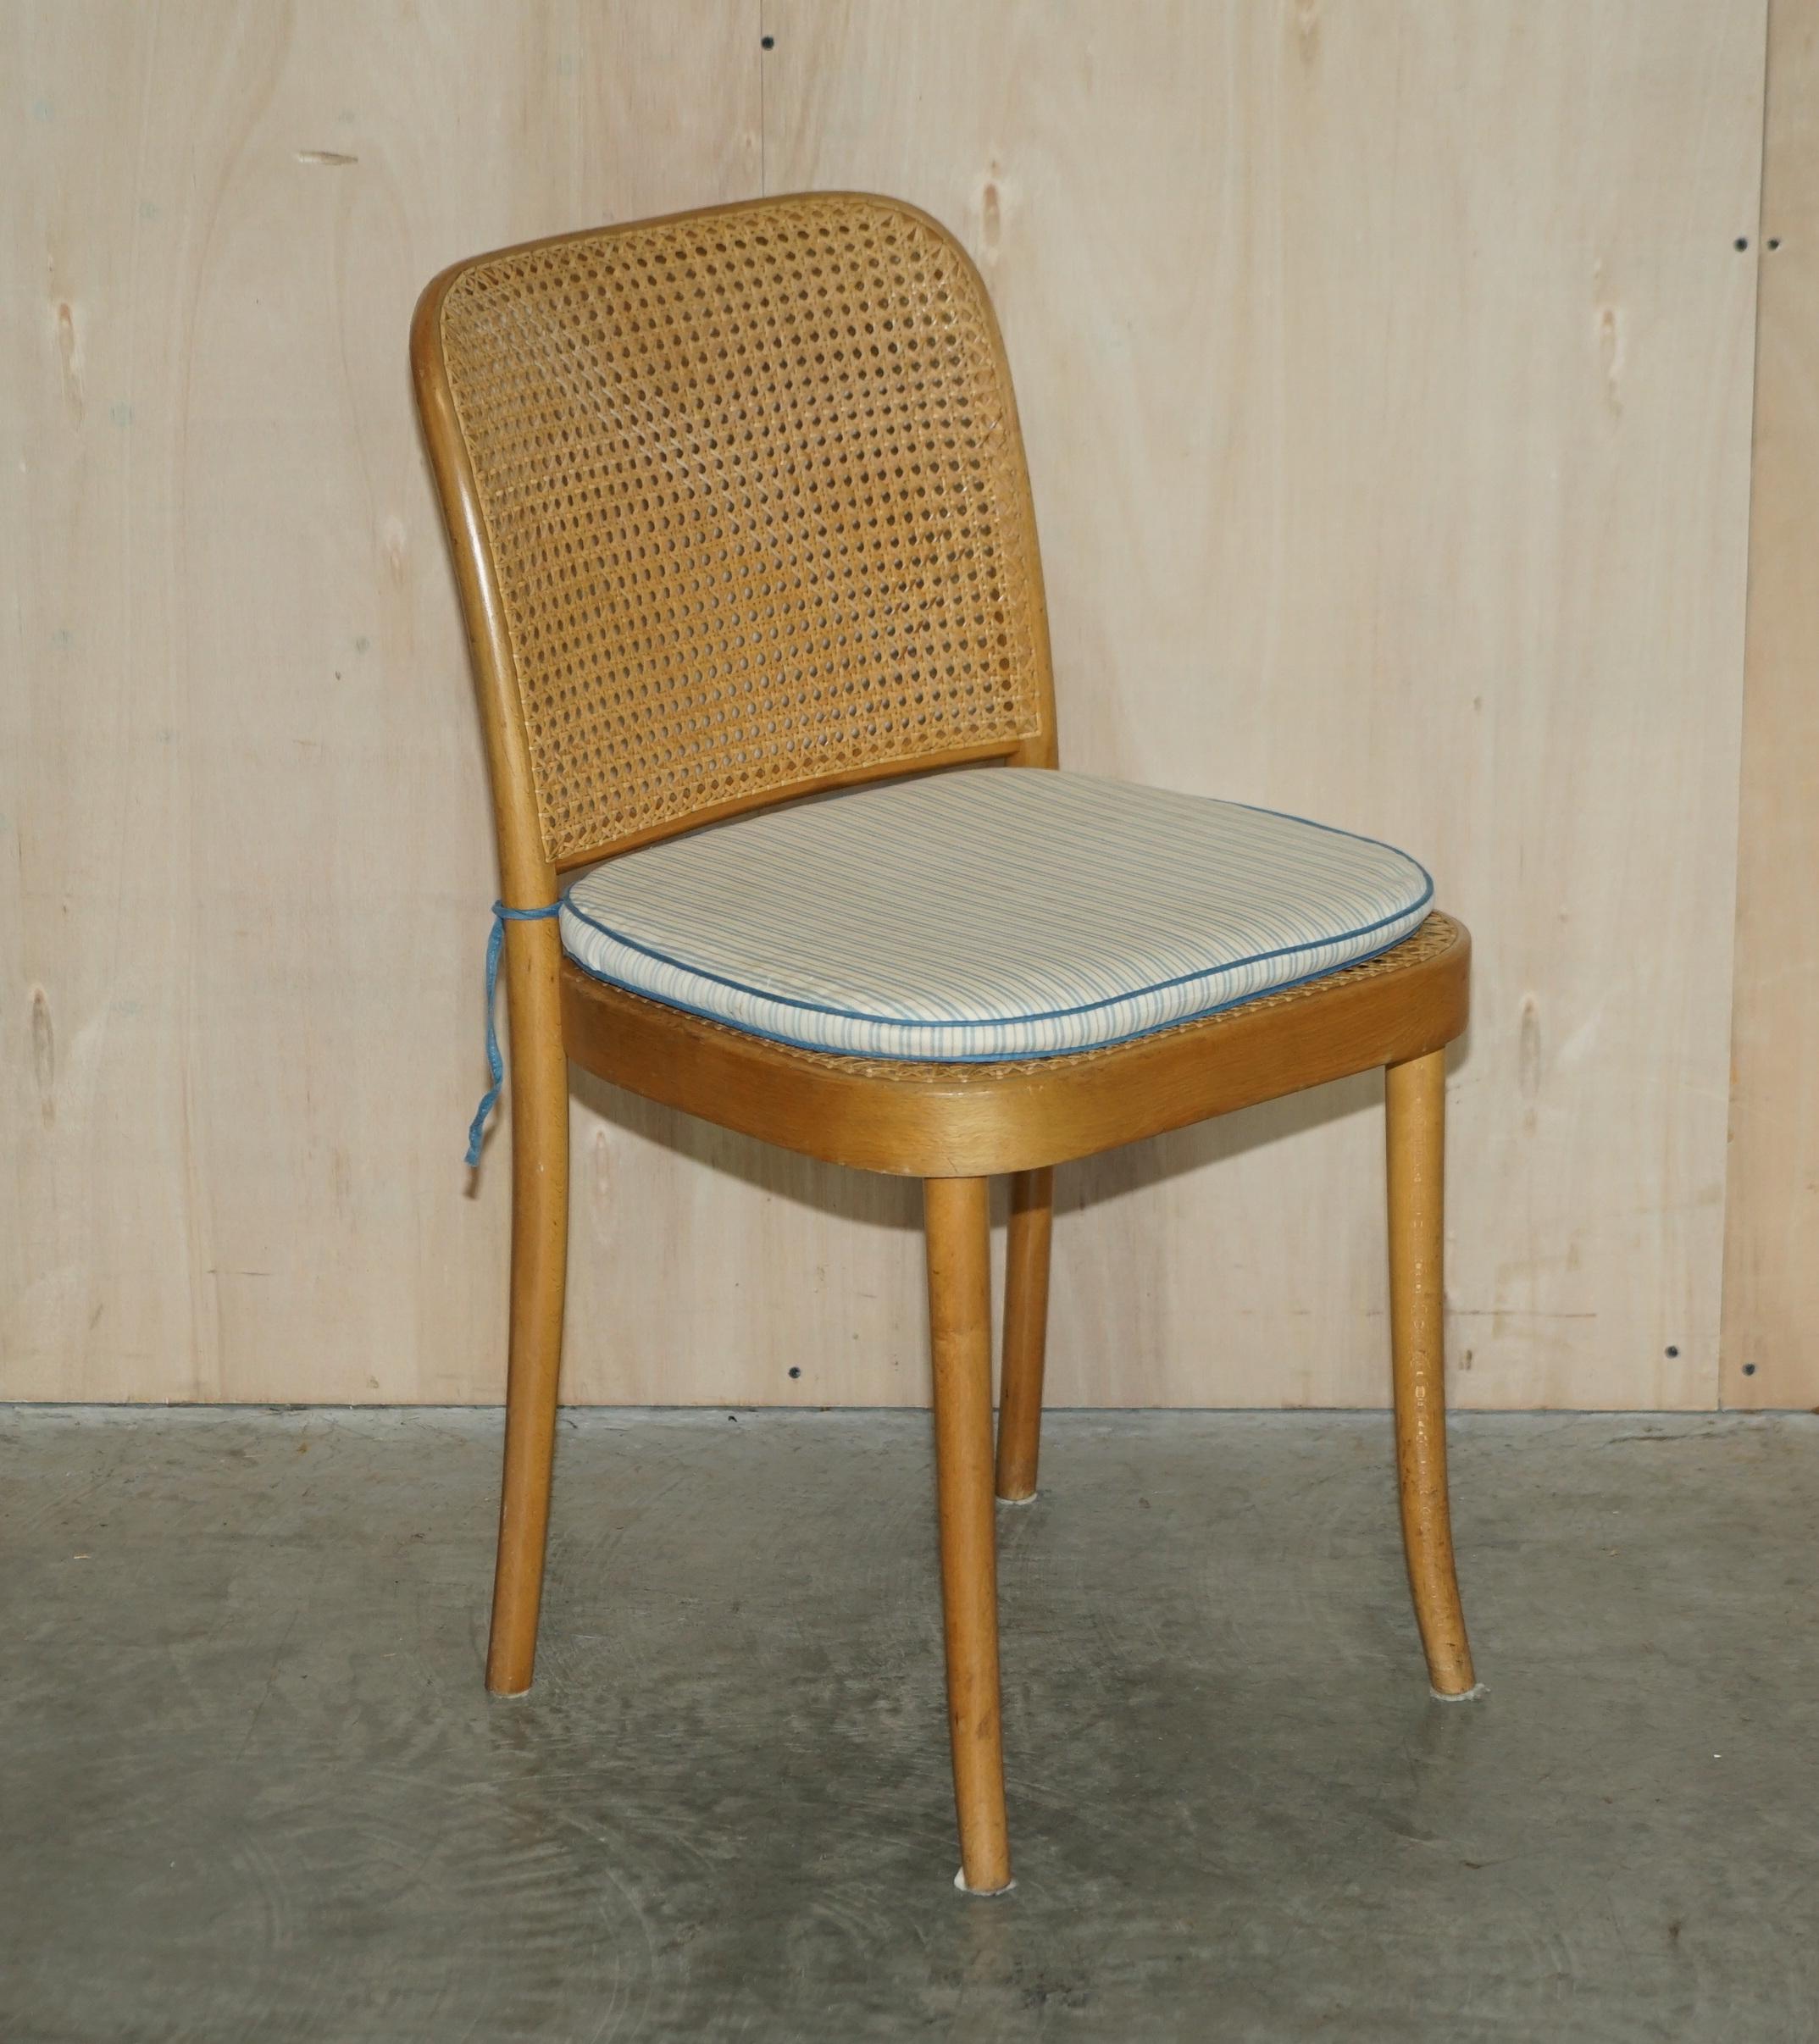 Nous sommes ravis d'offrir à la vente ce magnifique ensemble de cinq chaises de salle à manger originales des années 1920, fabriquées à la main en Pologne, conçues par Josef Frank et Joseph Hoffmann pour Thonet, modèle numéro 811.

Un ensemble